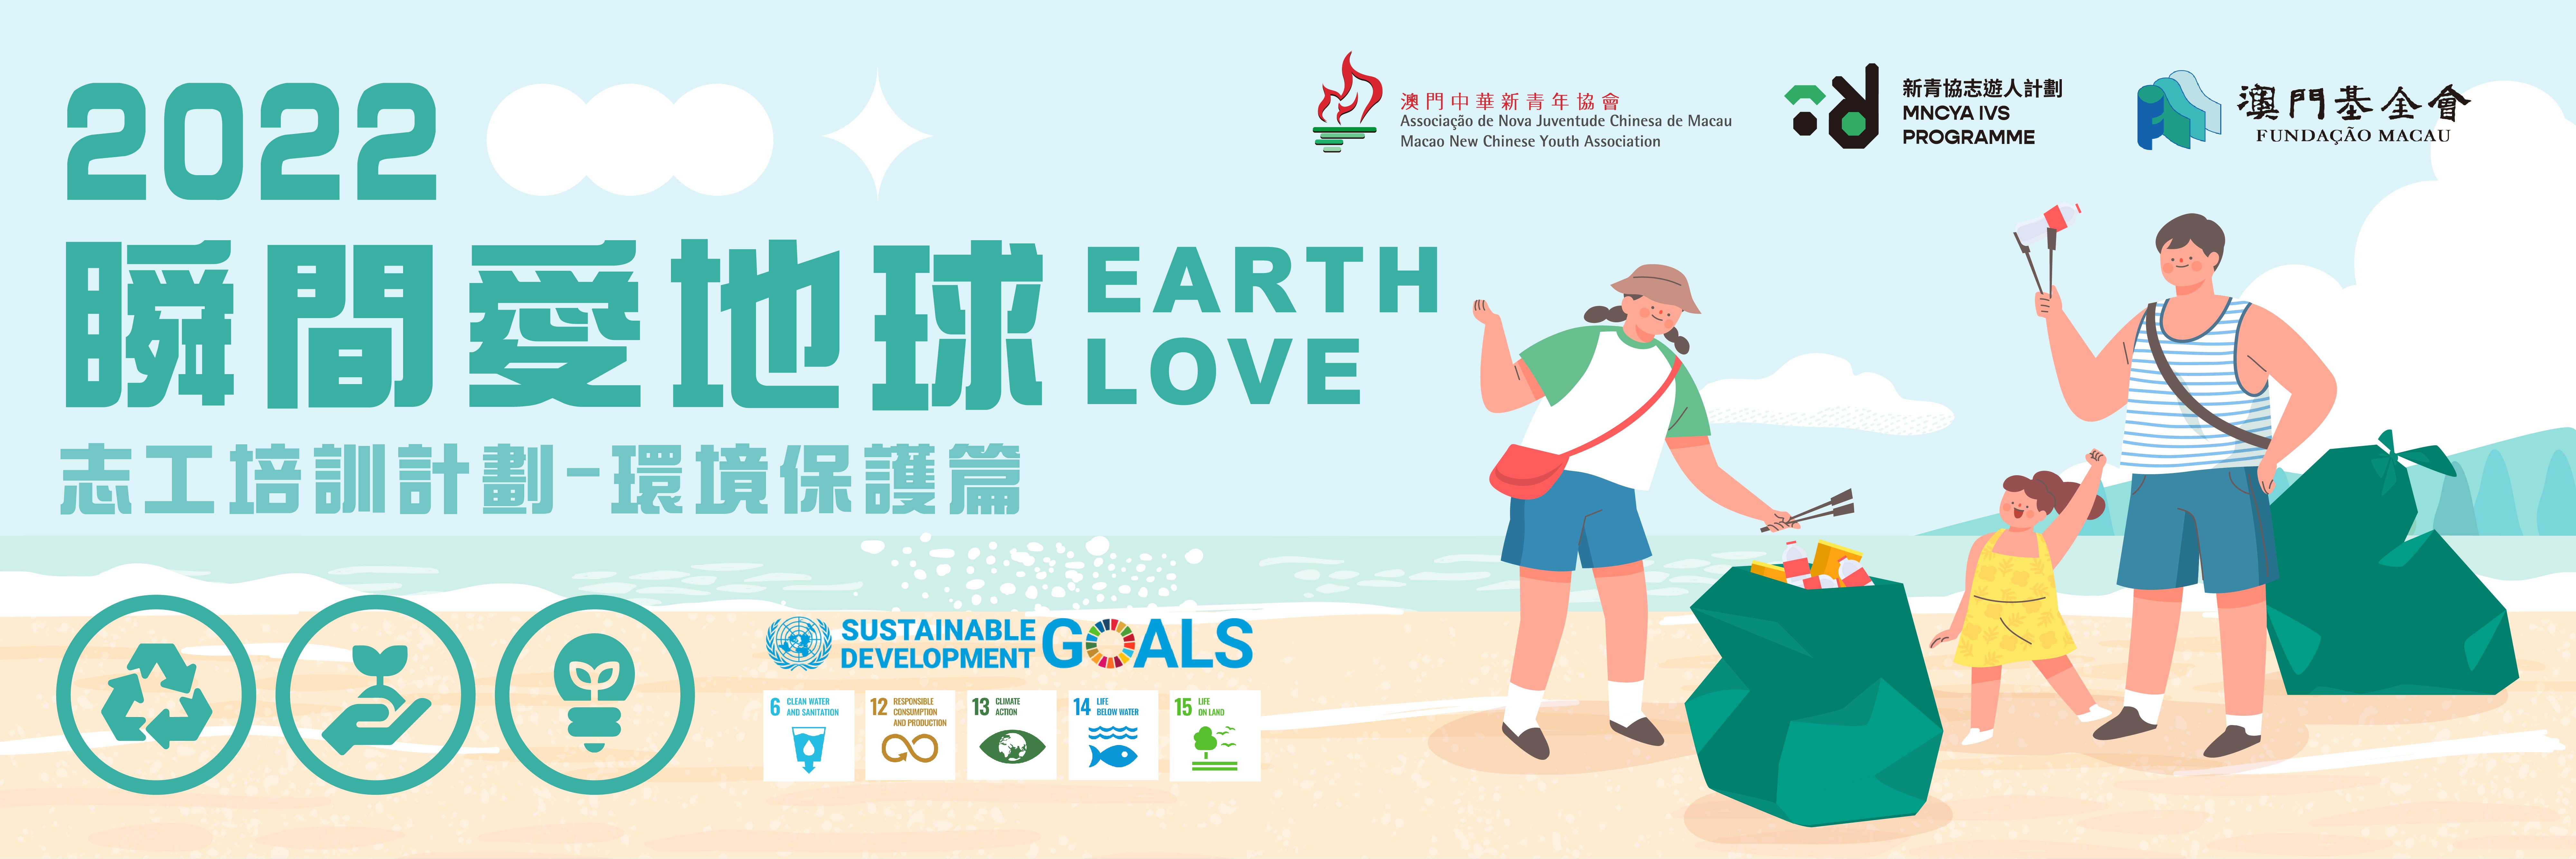 「瞬間愛地球2022」志工培訓計劃(環境保護篇)